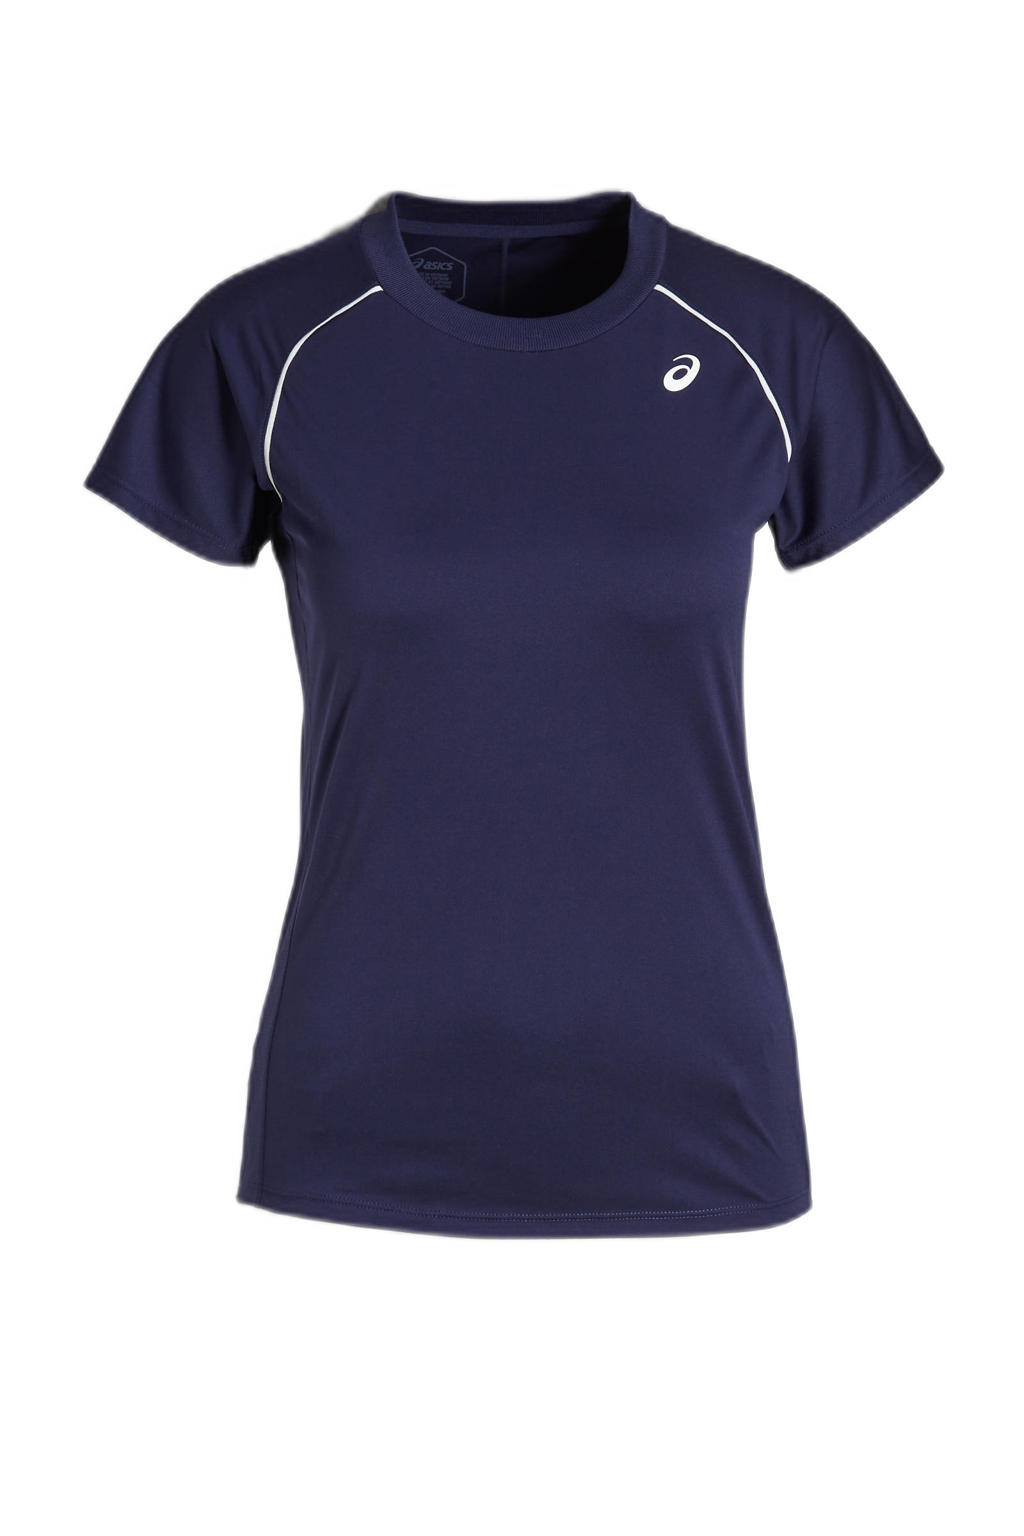 Donkerblauwe dames ASICS sport T-shirt Court van polyester met korte mouwen en ronde hals